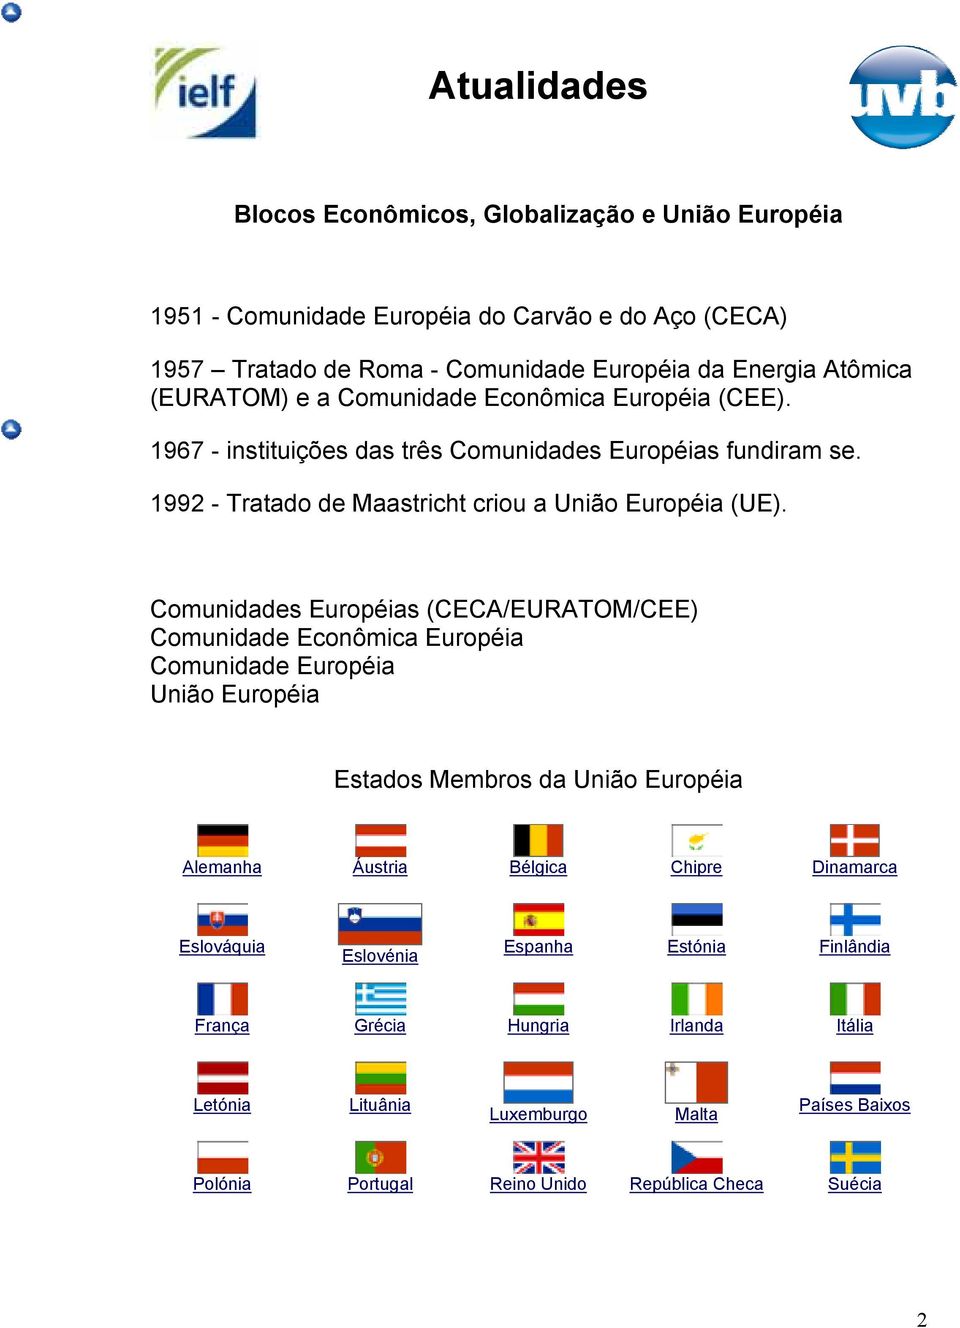 Comunidades Européias (CECA/EURATOM/CEE) Comunidade Econômica Européia Comunidade Européia União Européia Estados Membros da União Européia Alemanha Áustria Bélgica Chipre